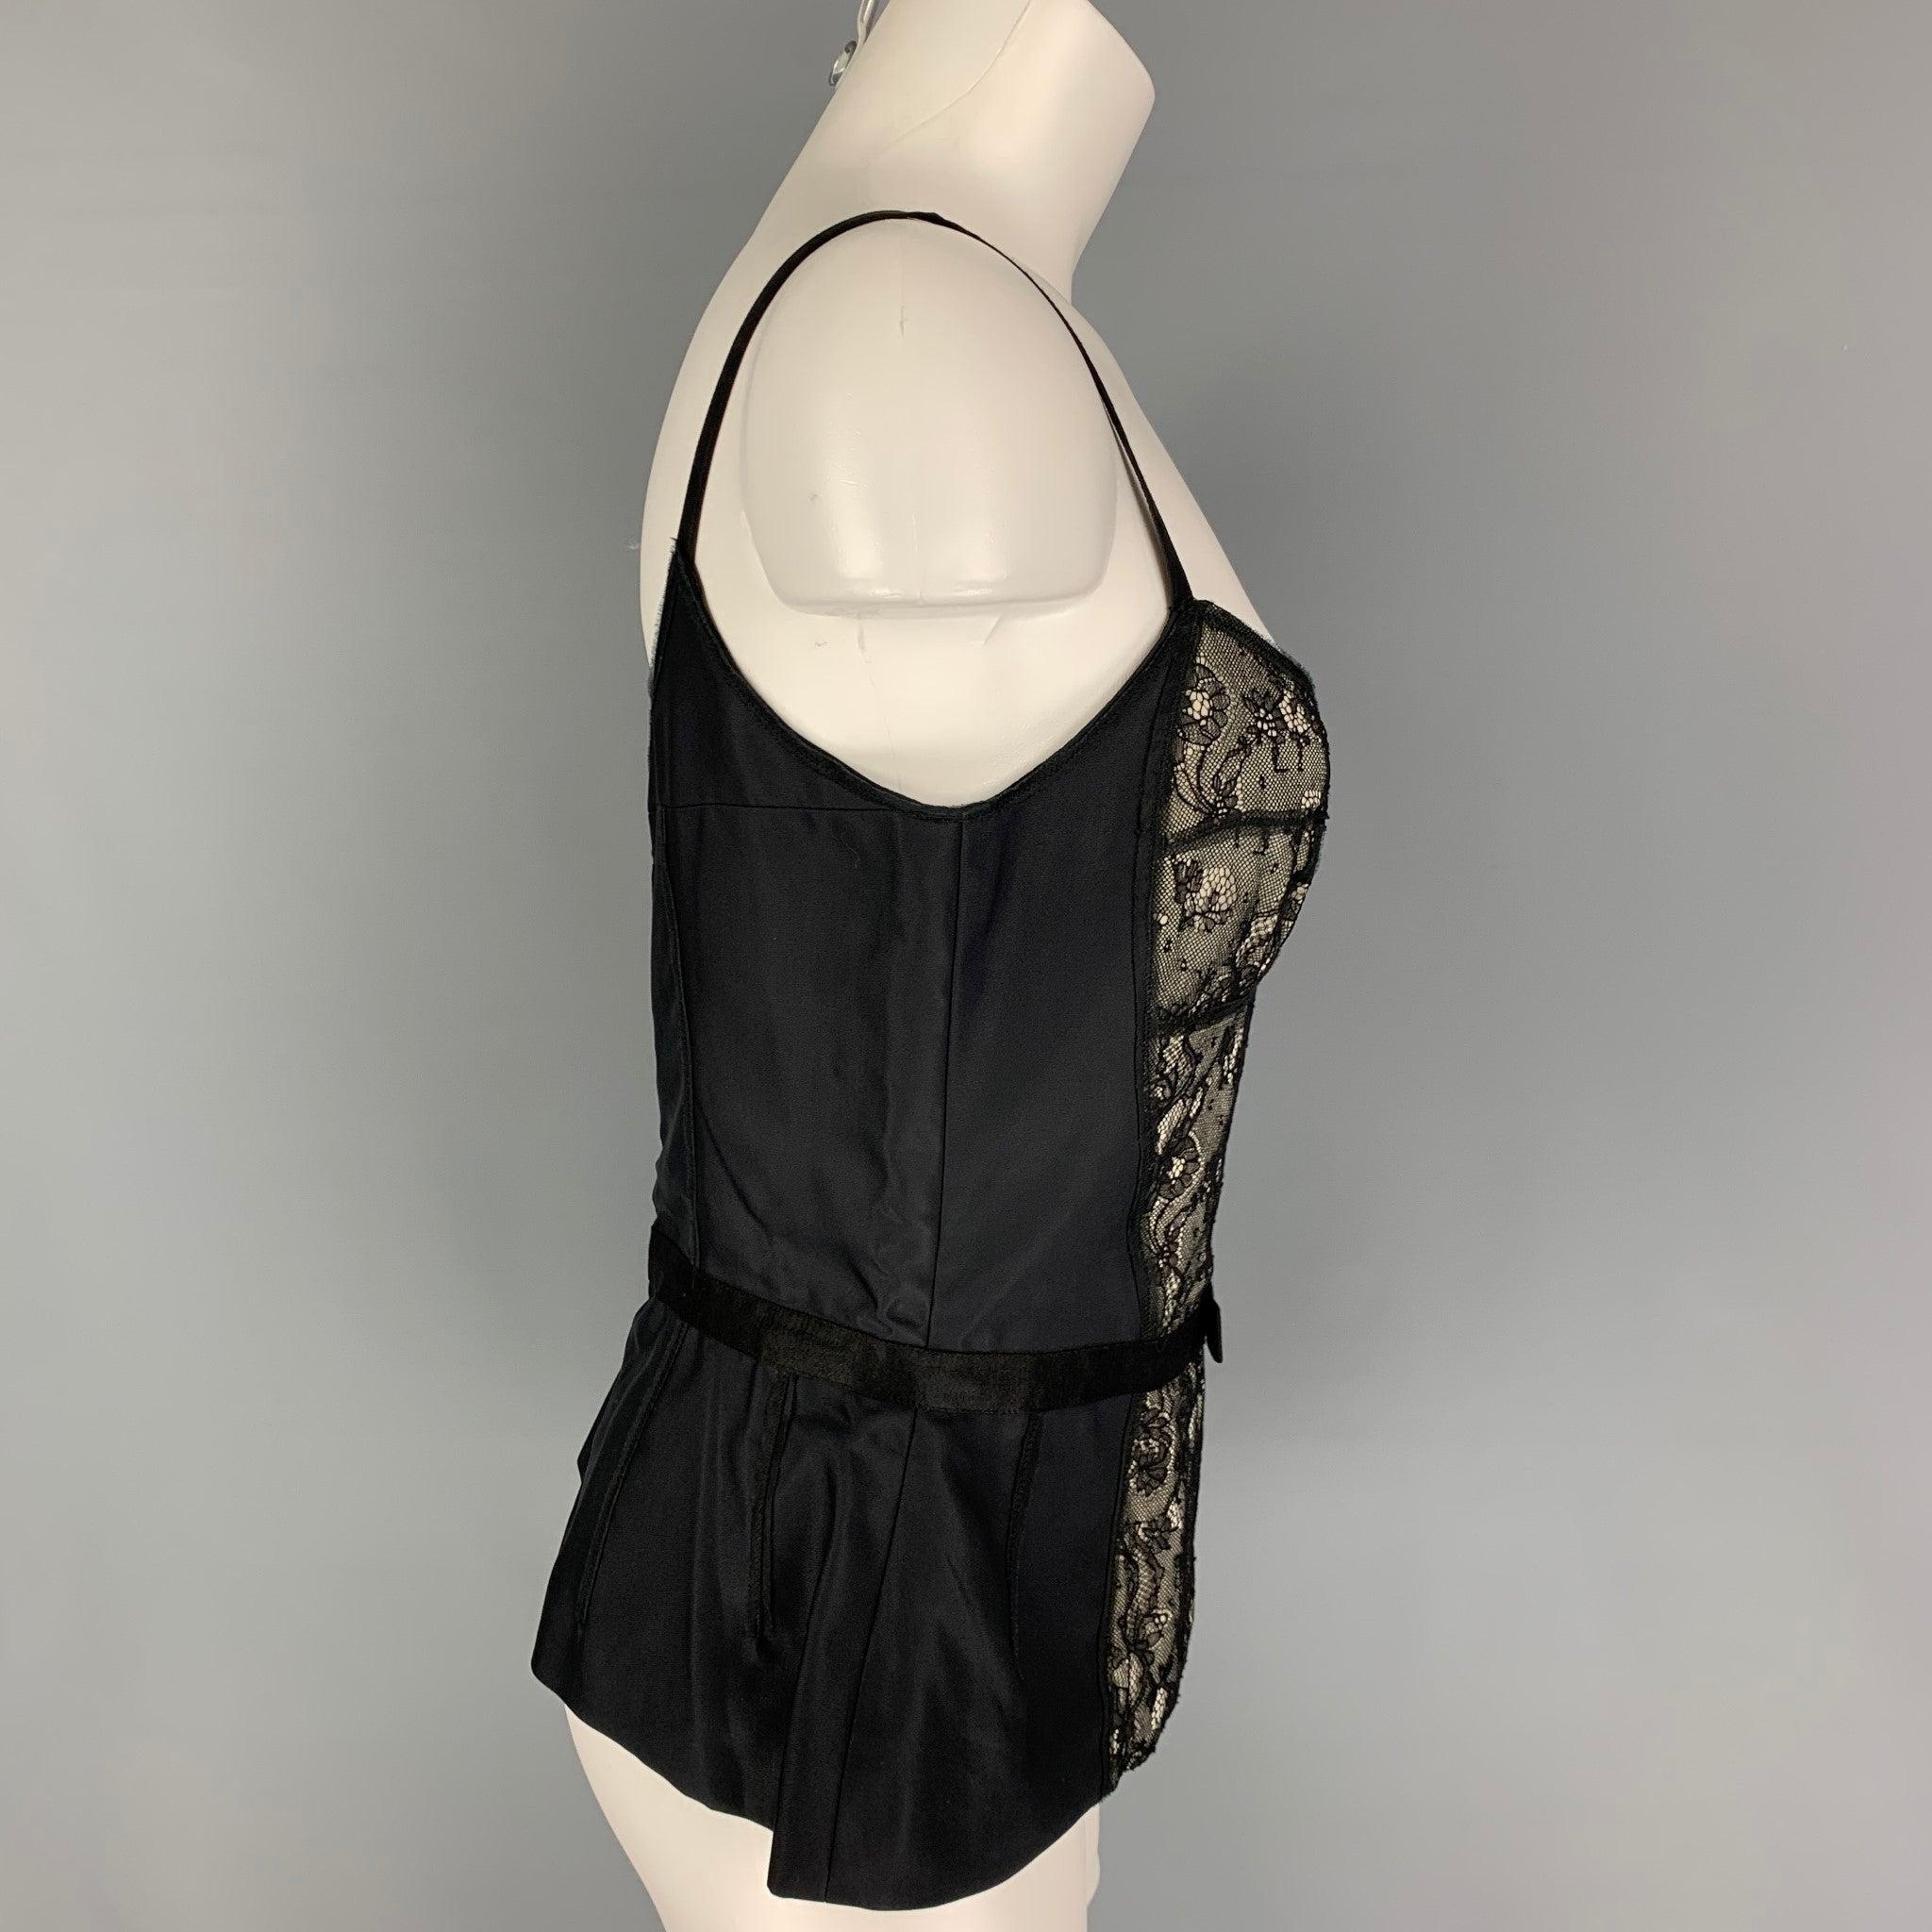 Le haut de la robe D&G by DOLCE & GABBANA est présenté dans une rayonne de dentelle noire et présente un style bustier, des détails de nœuds et des... 
Fermeture à glissière au dos.
Très bien
Etat d'occasion. 

Marqué :   44 

Mesures : 
  Poitrine